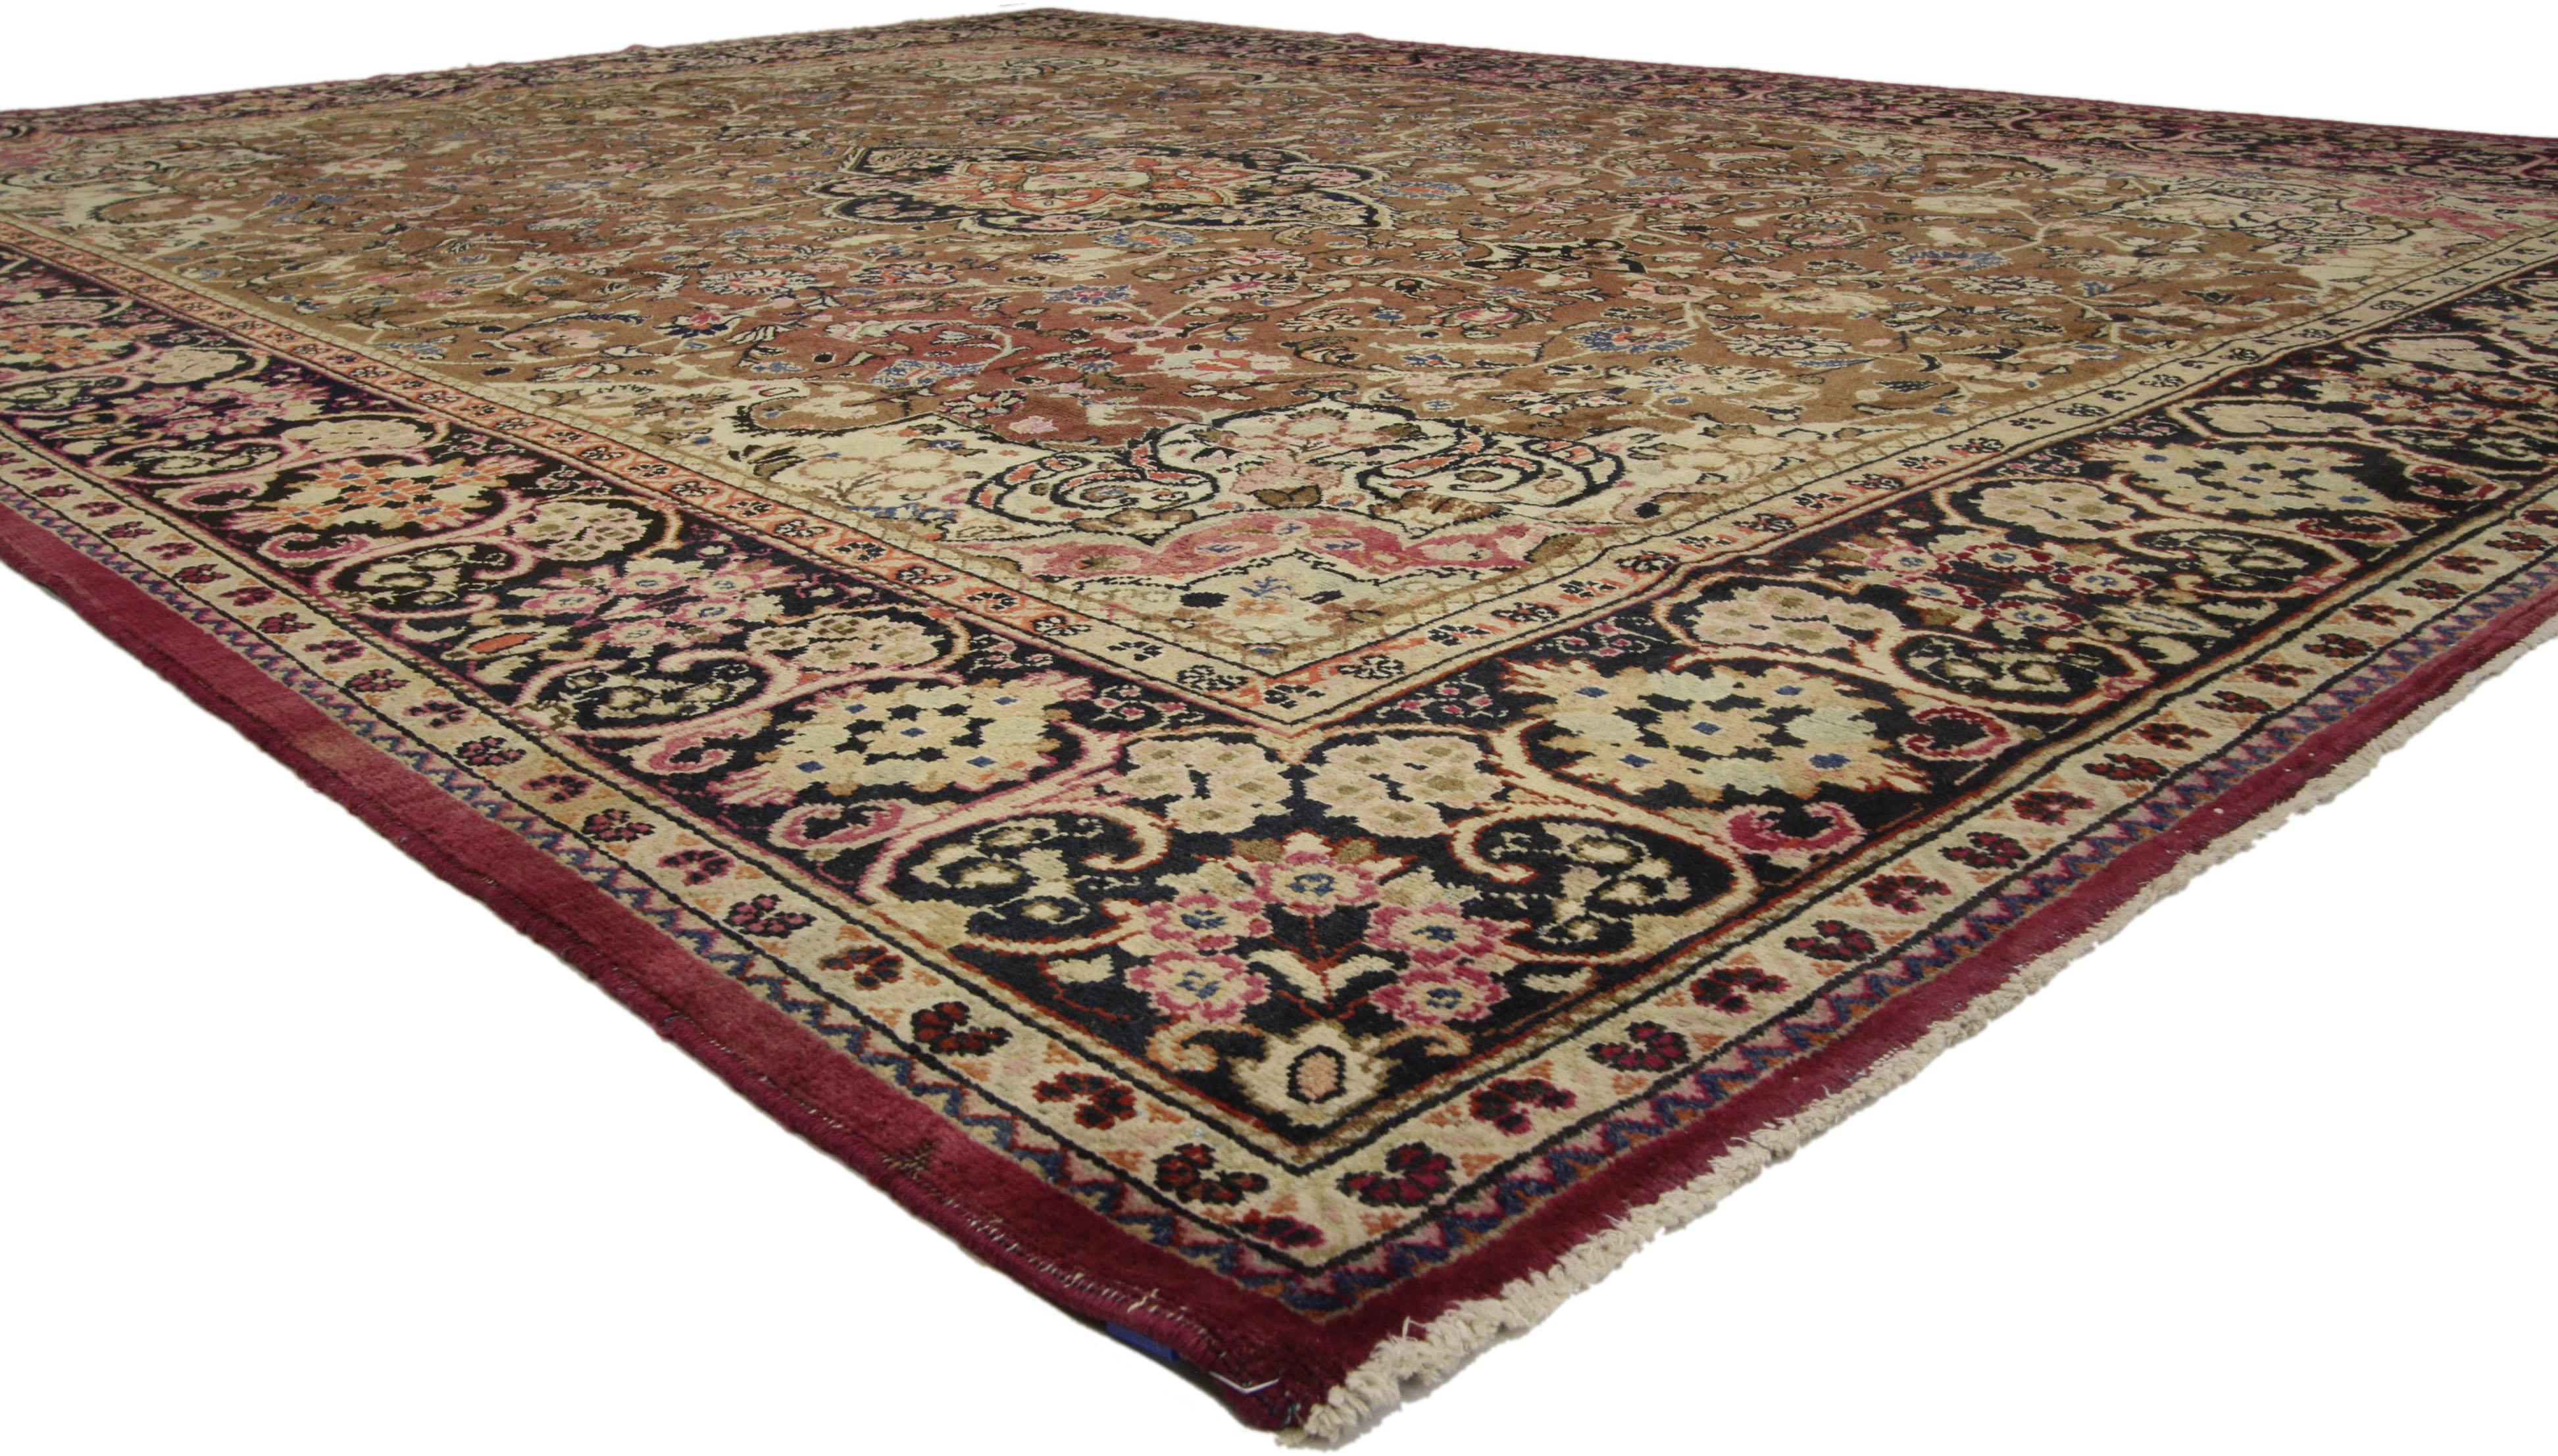 74671 Antiker persischer Mahal-Teppich im traditionellen Stil. Dieser persische Mahal-Teppich im traditionellen Stil zeichnet sich durch aufwendige Zwickel und ein kompliziertes Medaillon mit einem schwebenden Stern und Blumen auf dunklem Grund aus.